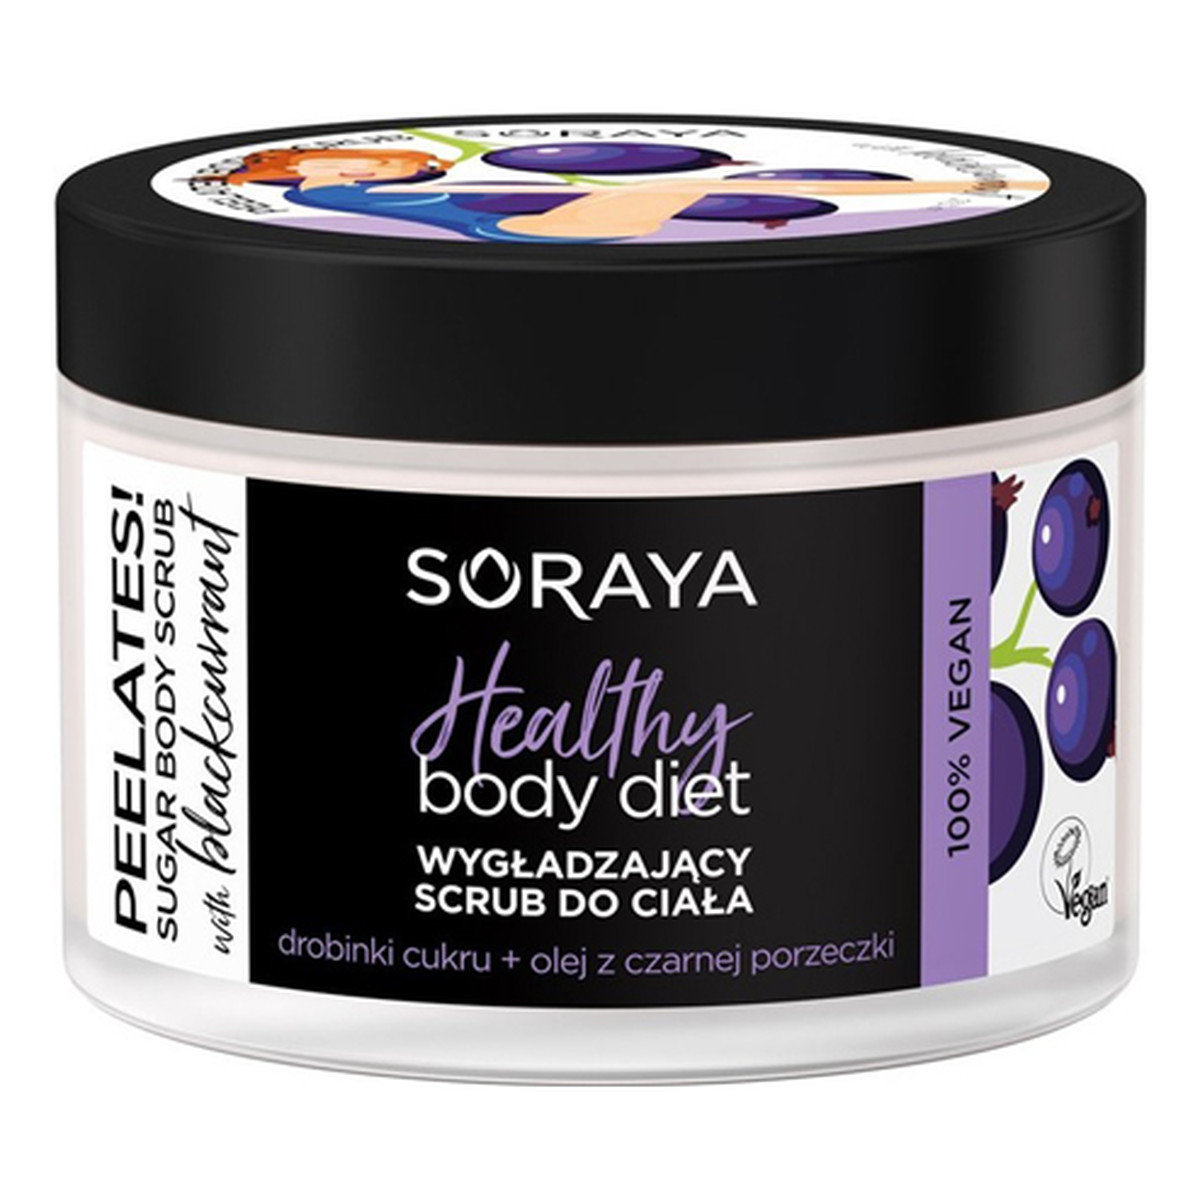 Soraya HEALTHY BODY DIET Peeling czarna porzeczka 200g